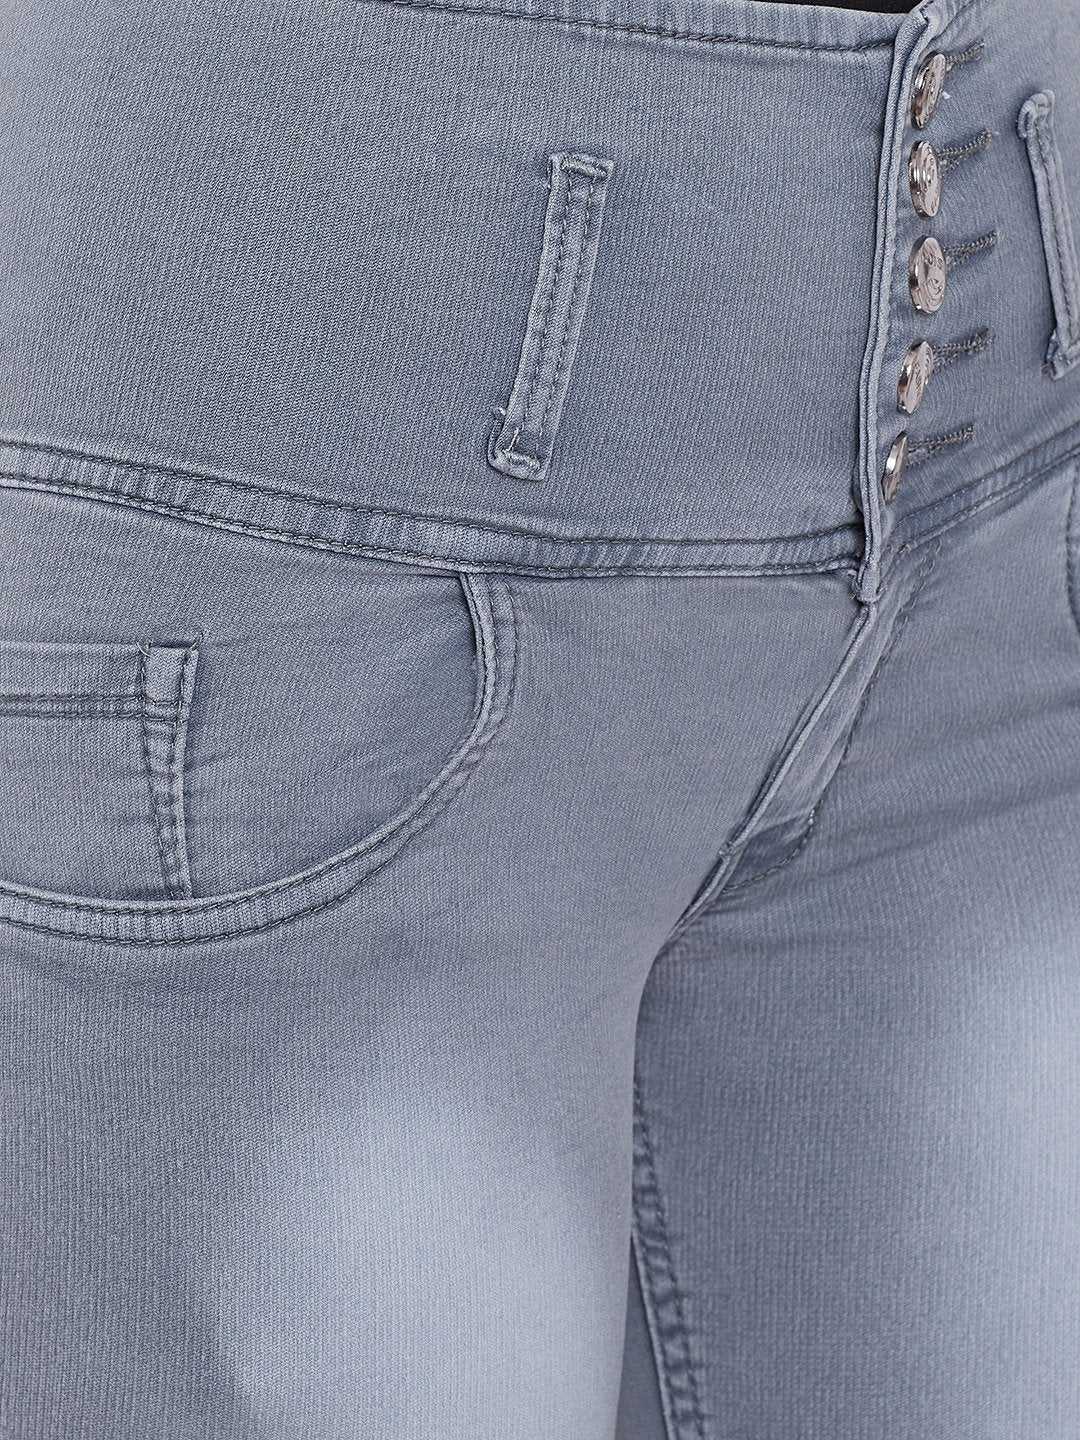 High Waist 5 Button Grey Capris - NiftyJeans